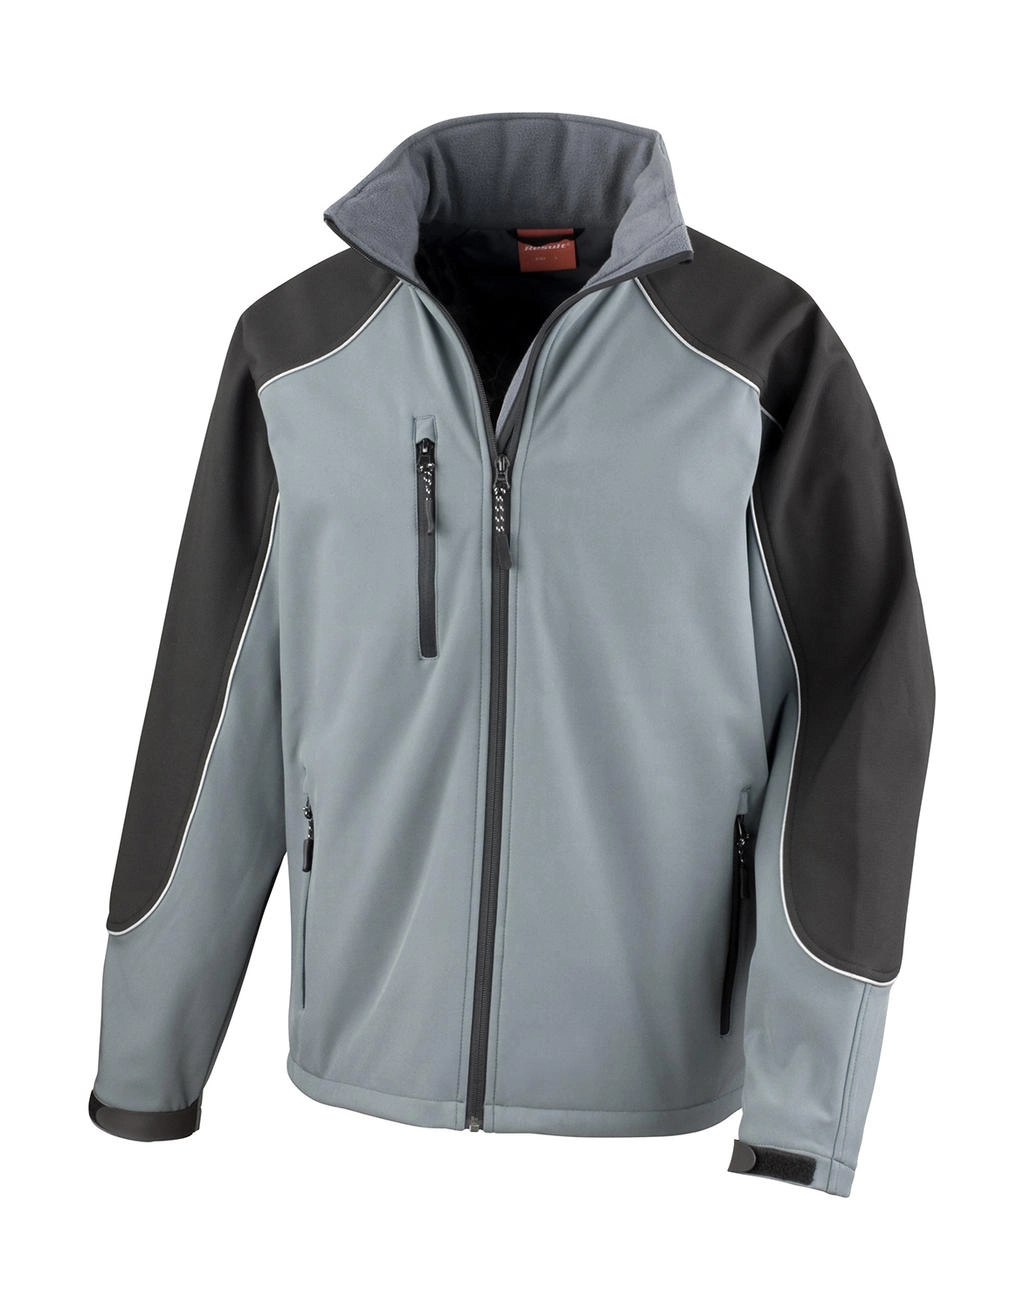 Ice Fell Hooded Softshell Jacket zum Besticken und Bedrucken in der Farbe Grey/Black mit Ihren Logo, Schriftzug oder Motiv.